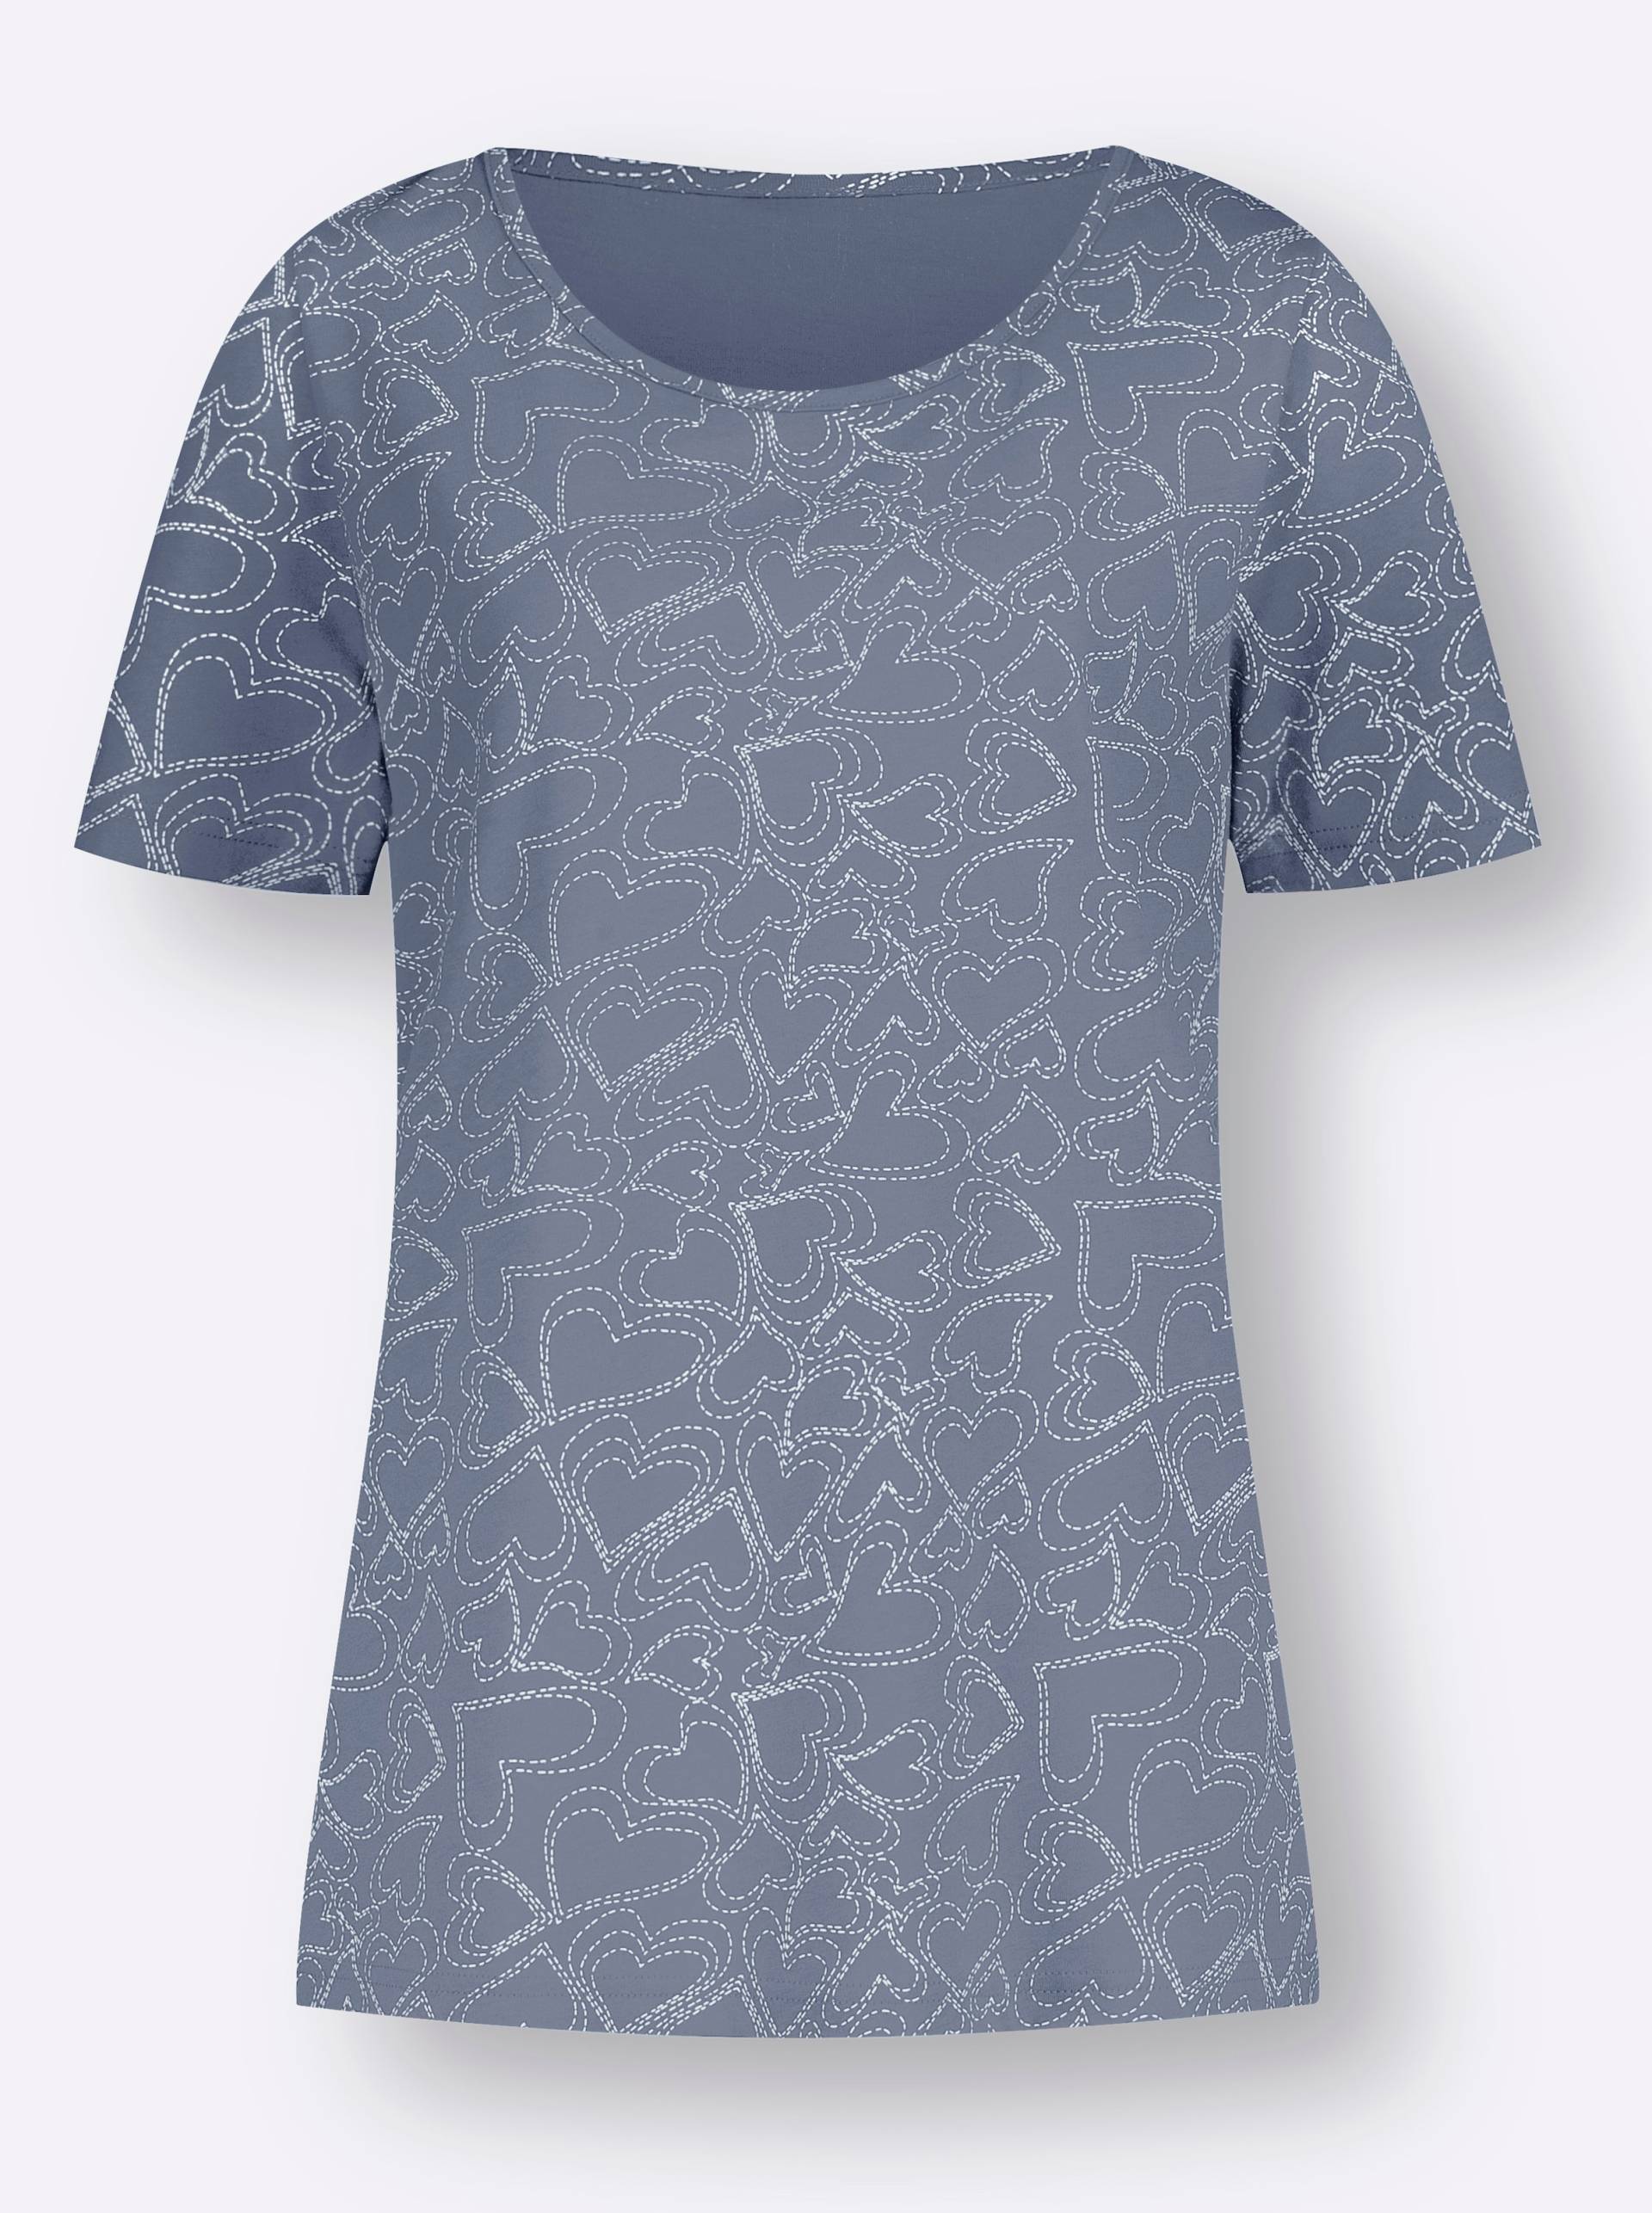 T-Shirt in taubenblau-bedruckt von heine